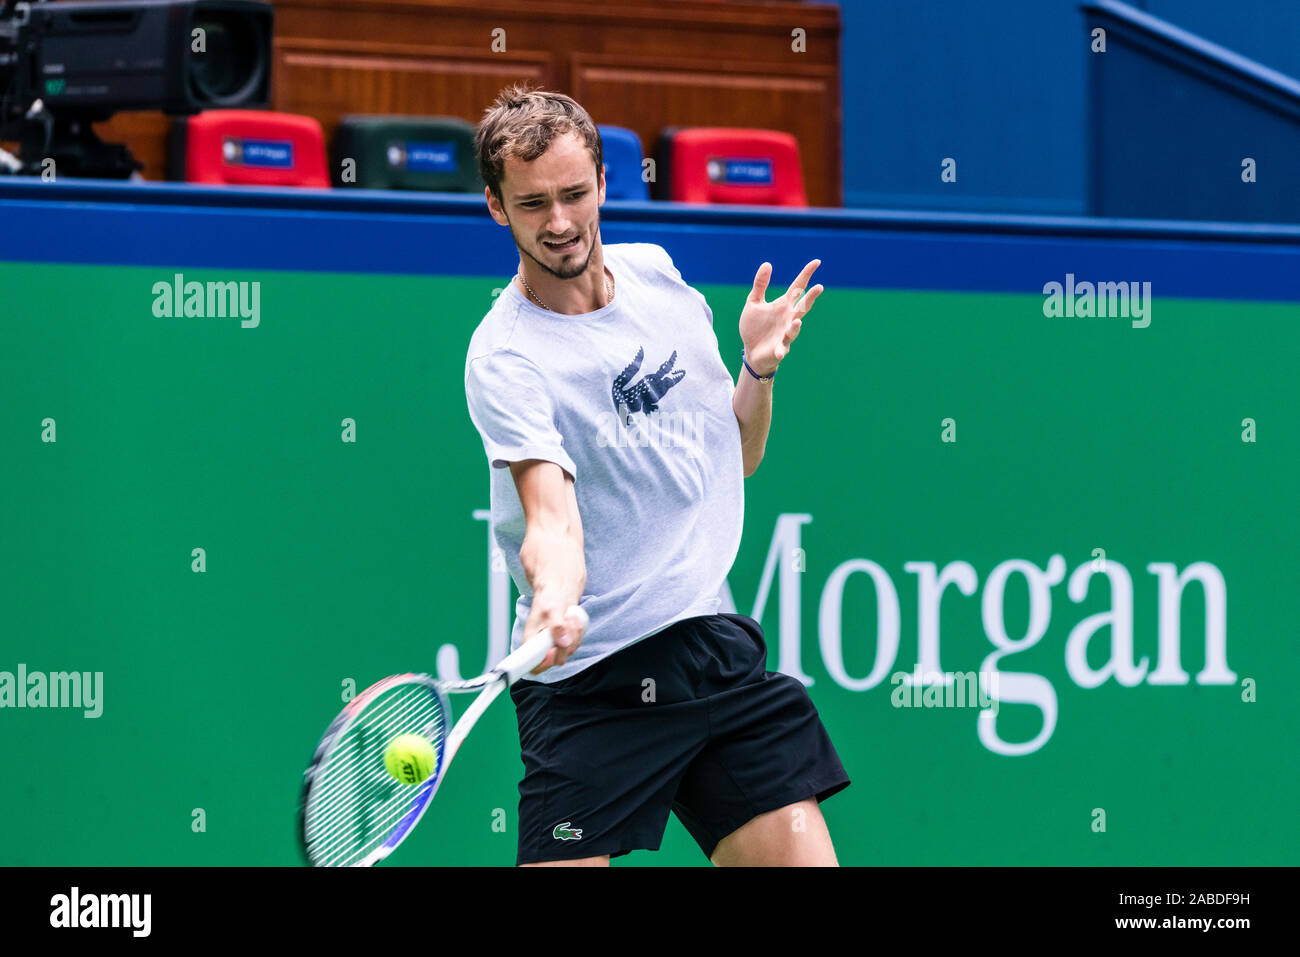 Il russo giocatore di tennis professionista Daniil Medvedev pratiche davanti alla semifinale del 2019 Rolex Masters di Shanghai, in Cina a Shanghai, 12 ottobre 2019. Foto Stock